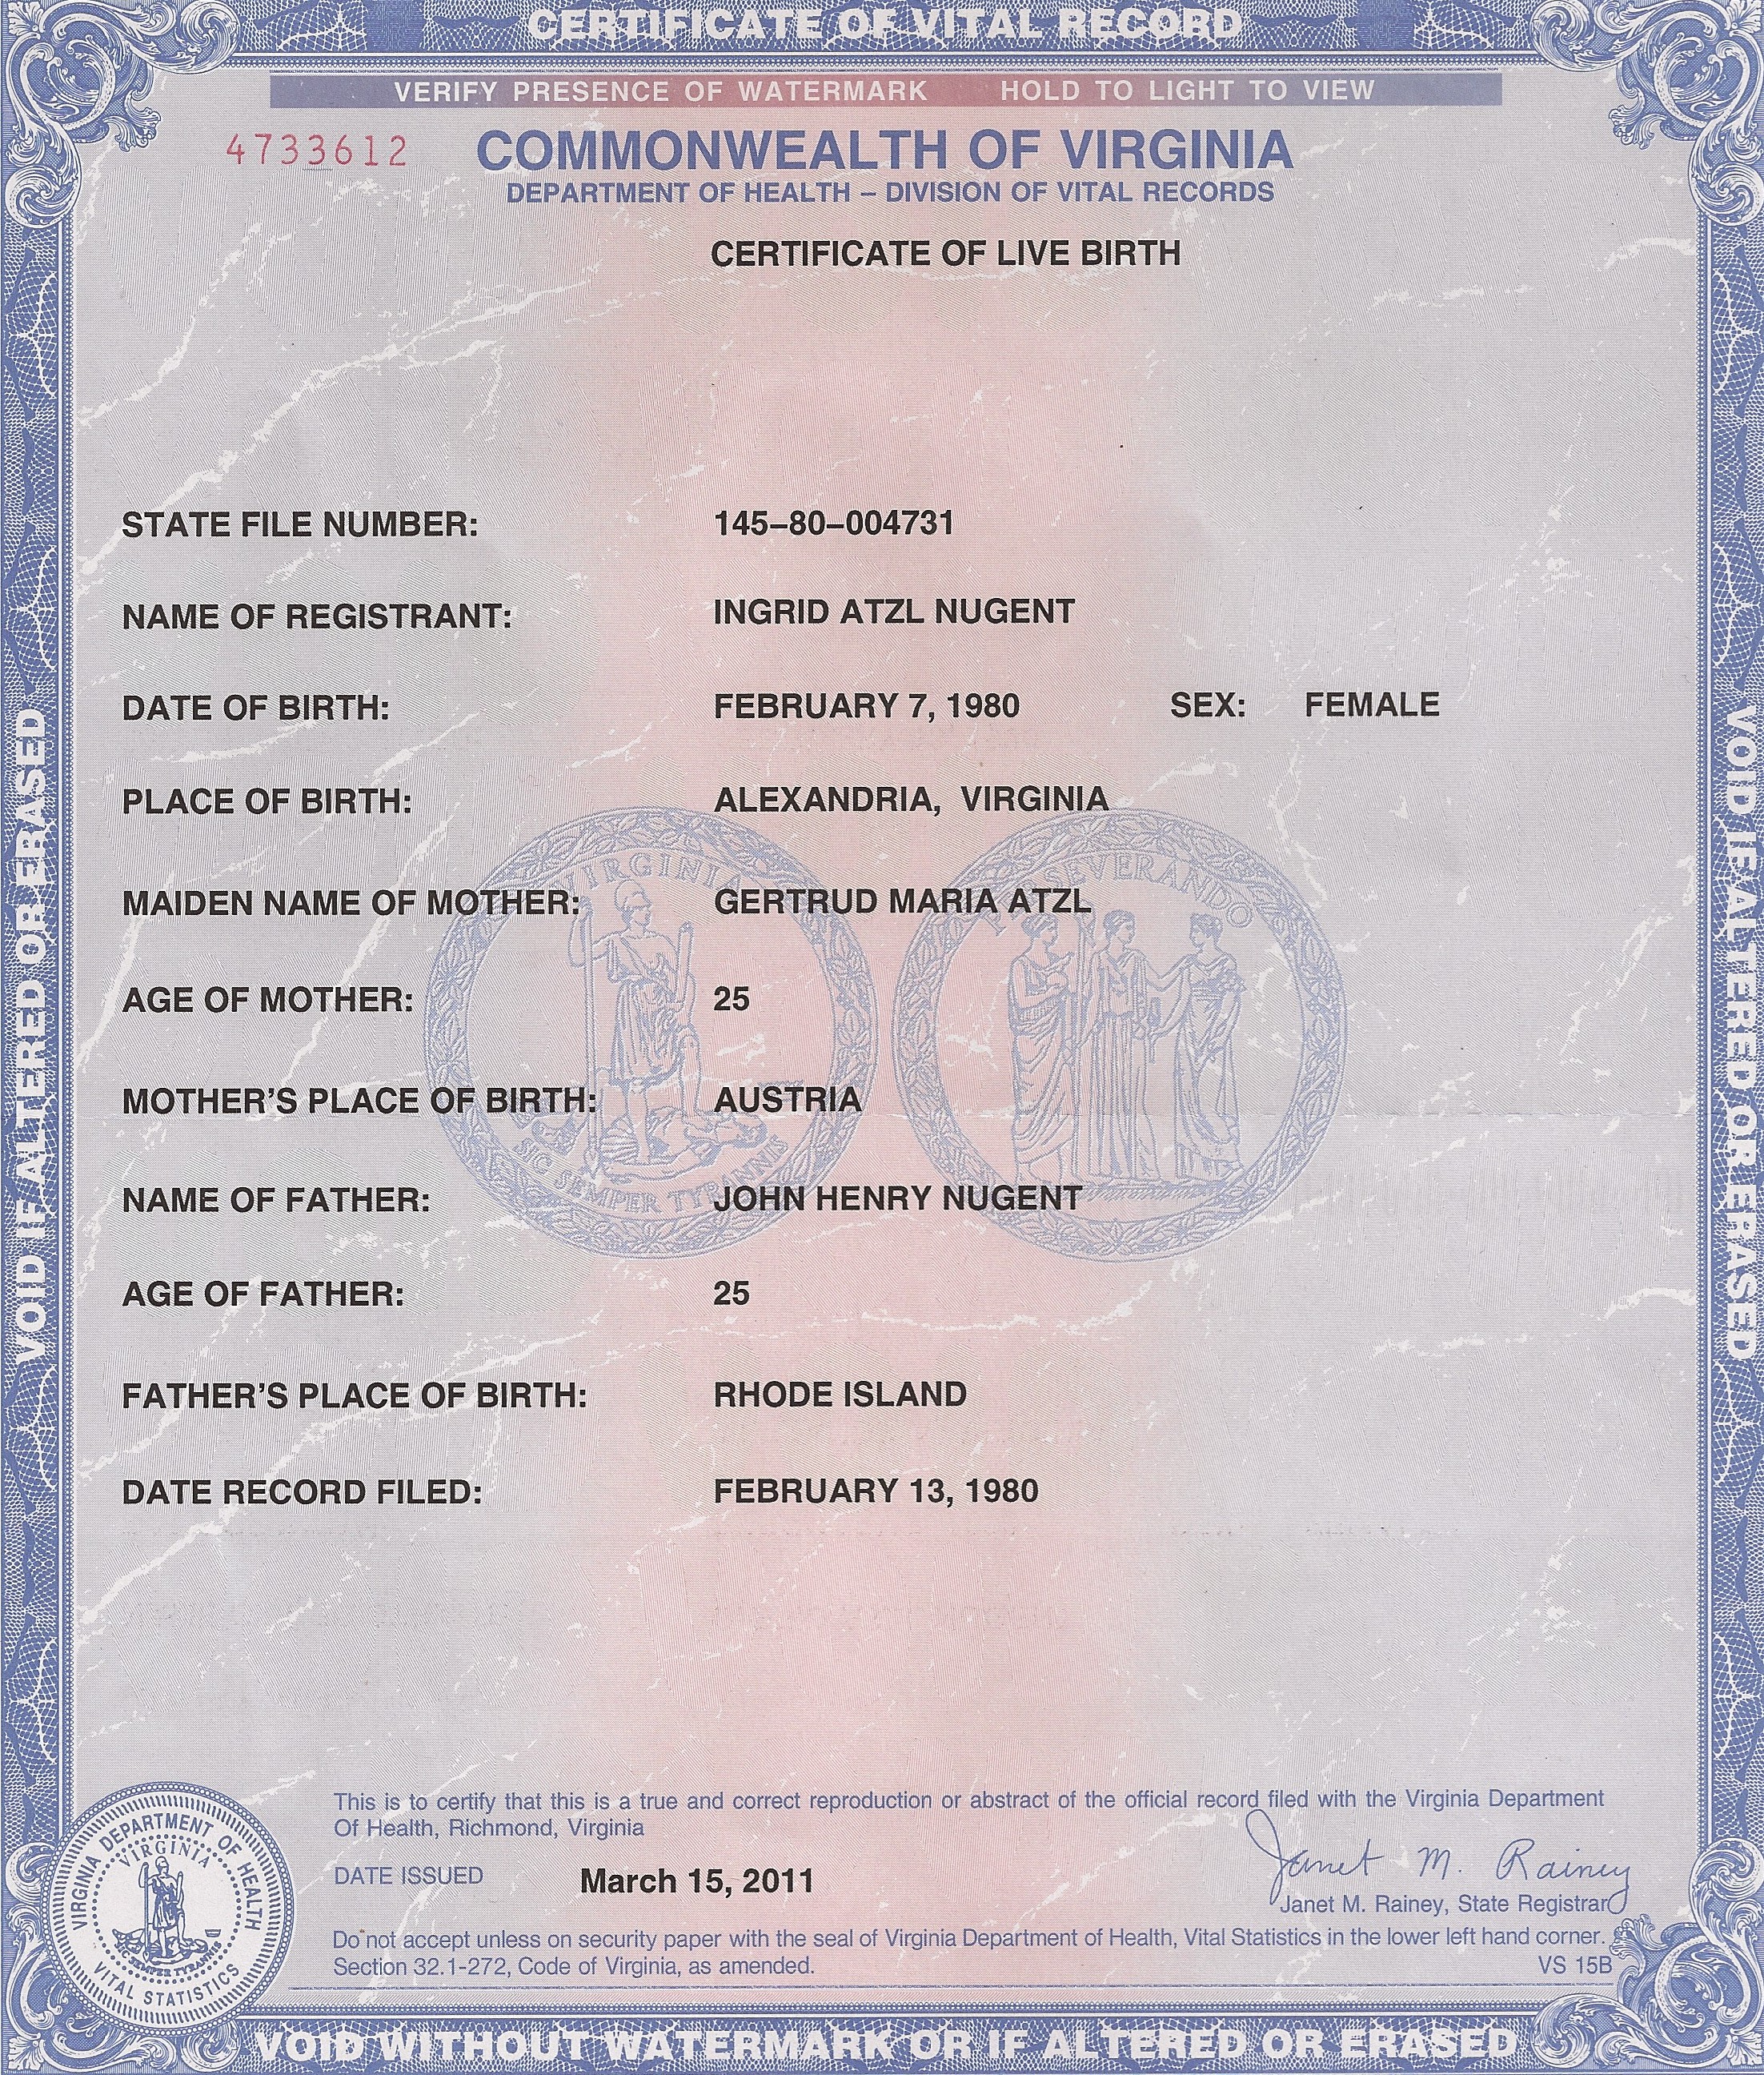 ingrid-atzl-nugent-va-birth-certificate